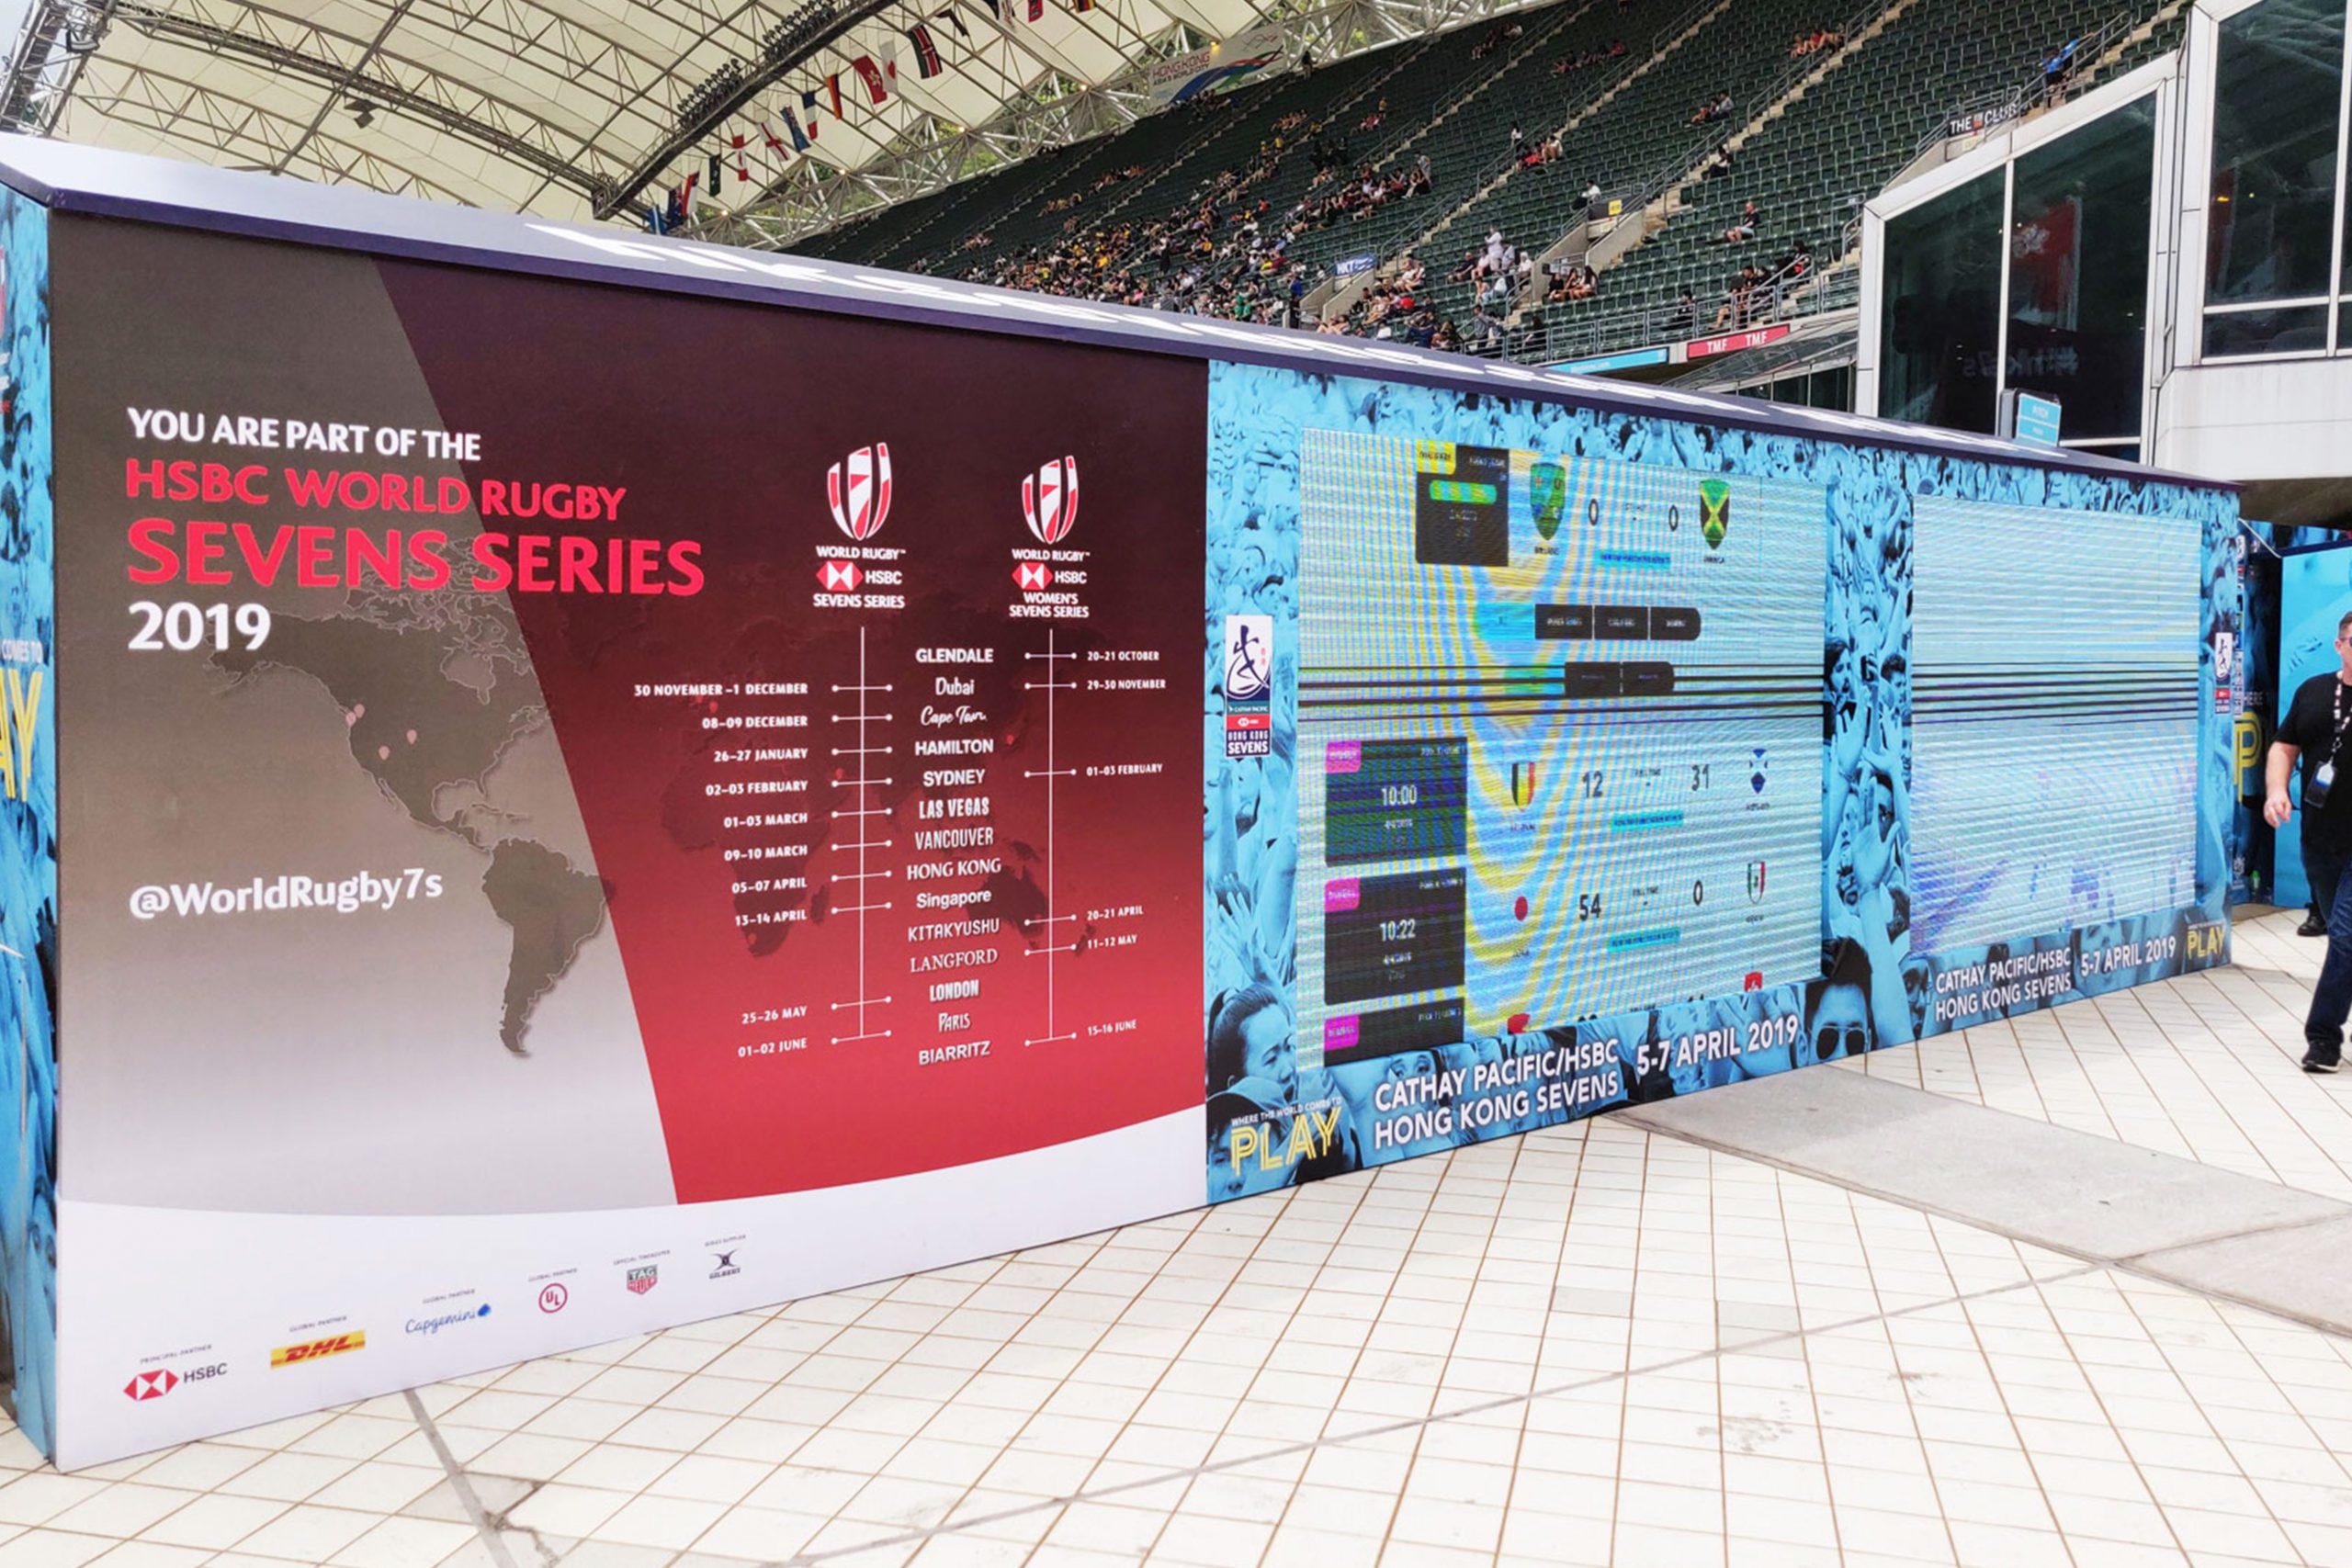 Hong Kong Seven sports event info wall in stadium